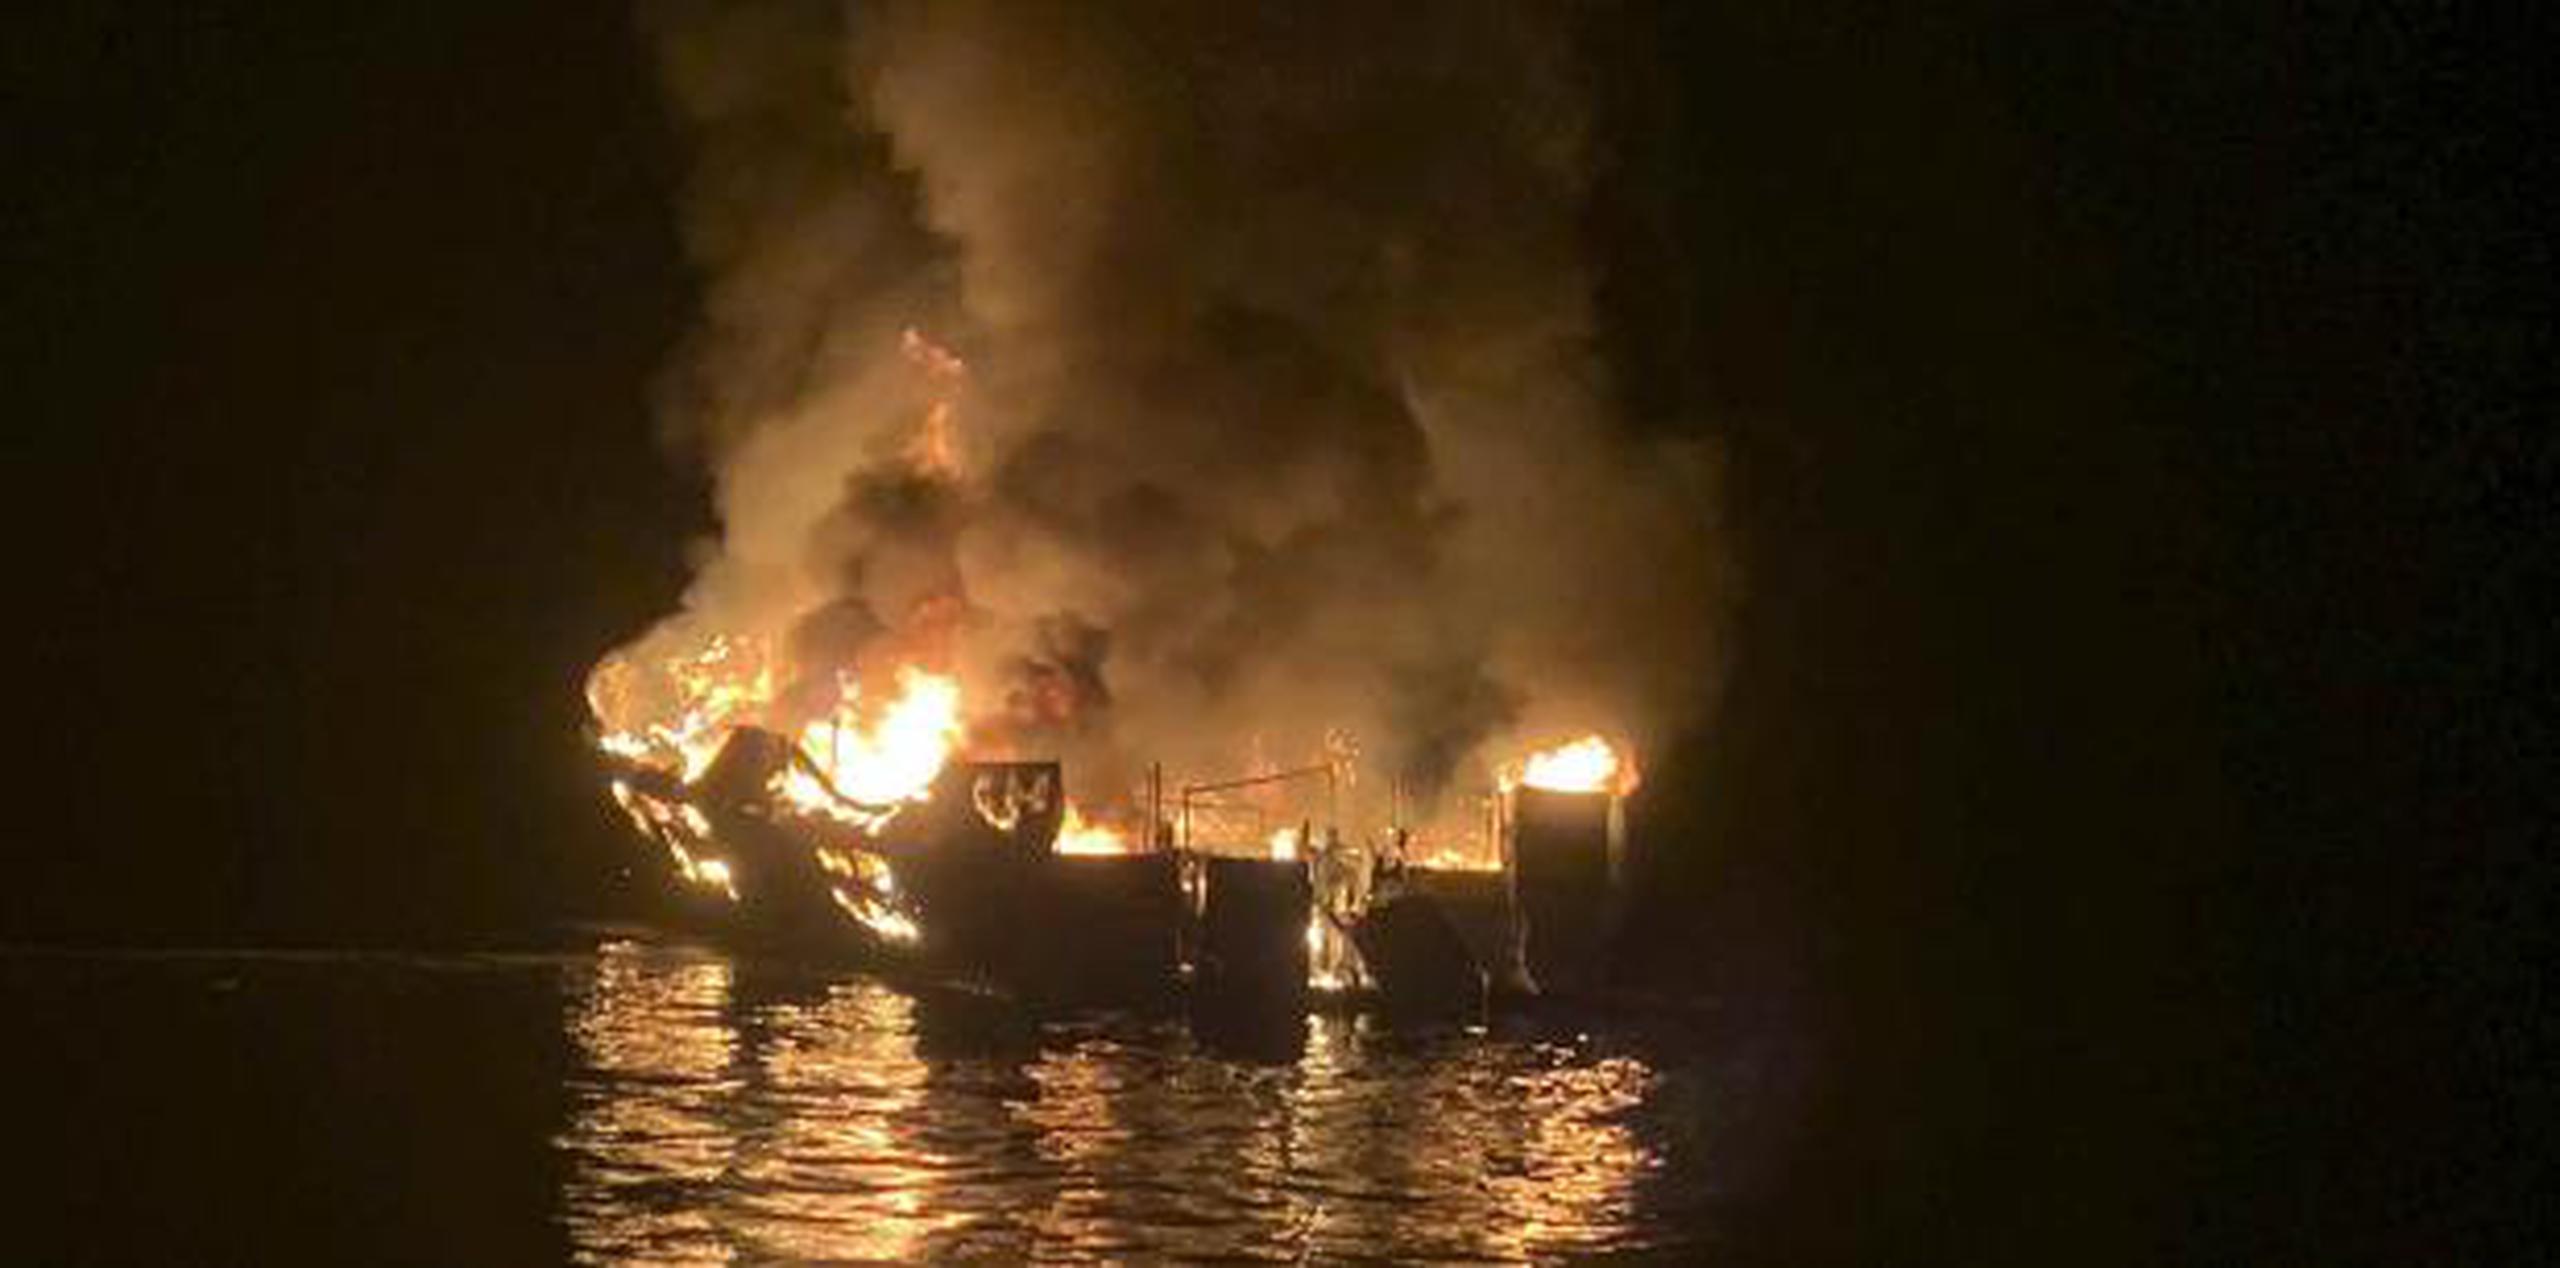 La embarcación comercial de buceo de 20 metros de largo estaba a unos 18 metrosde la costa de la isla de Santa Cruz cuando inició el incendio alrededor de las 3:00 de la madrugada. (AP)